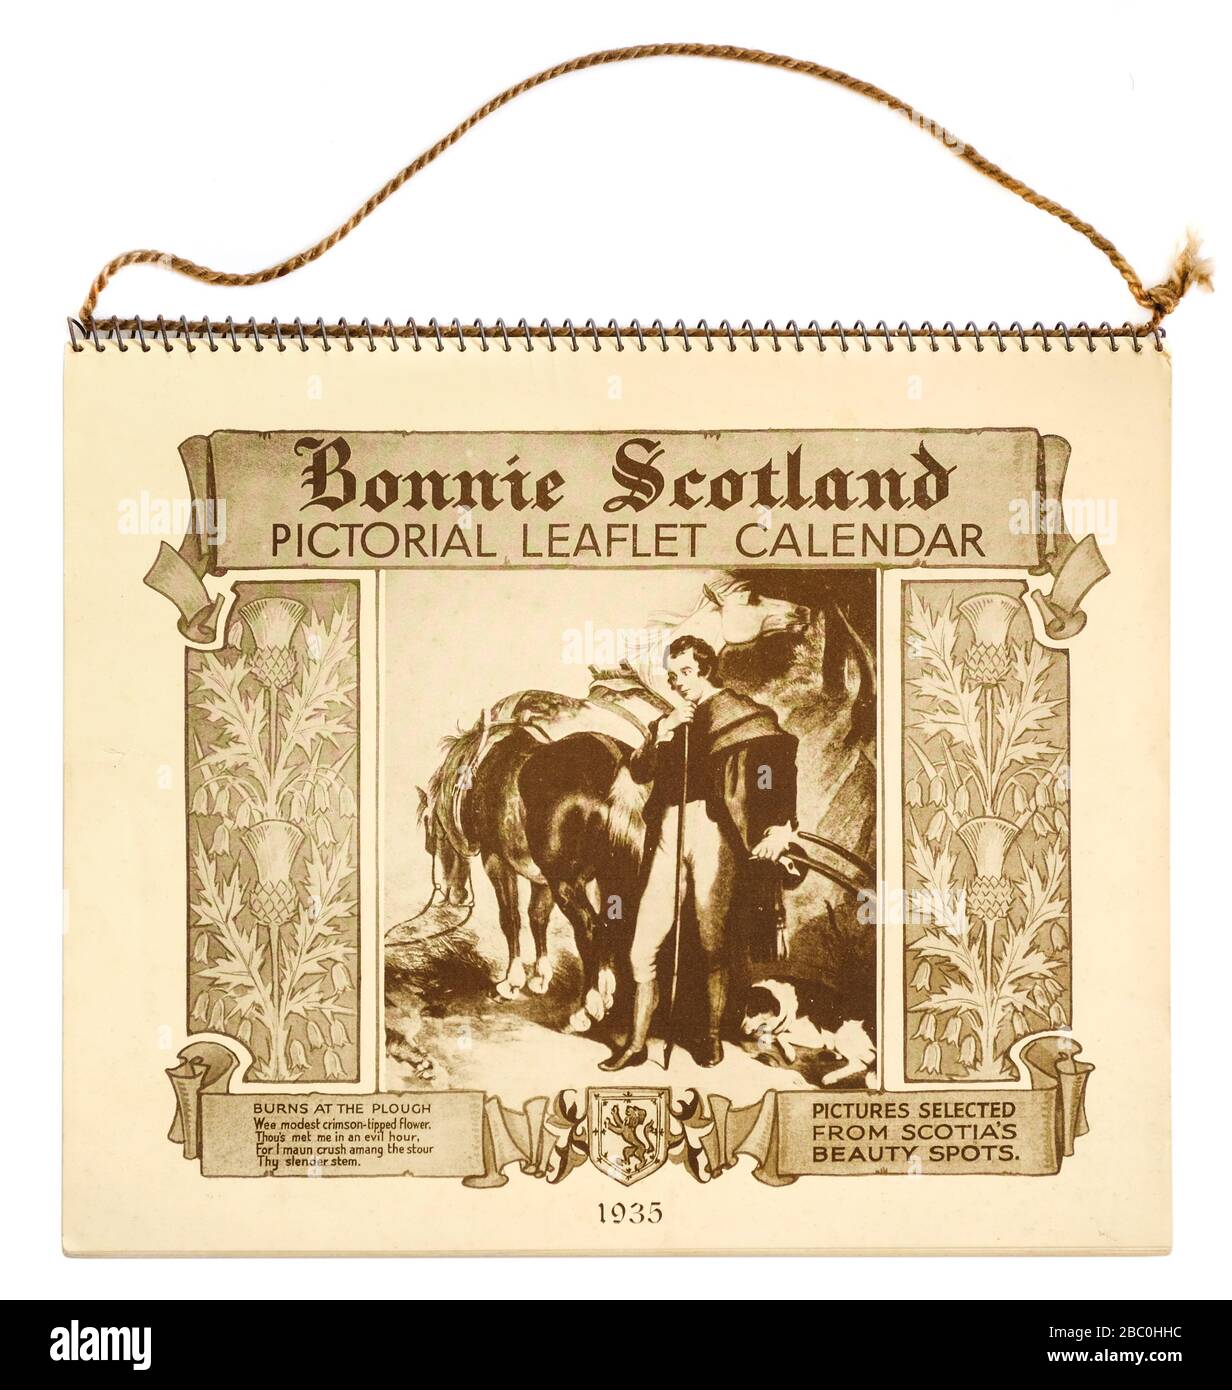 Calendrier des liaflet d'images « Bonnie Scotland » non utilisé à partir de 1935, avec « Burns at the Plough » sur la couverture avant Banque D'Images